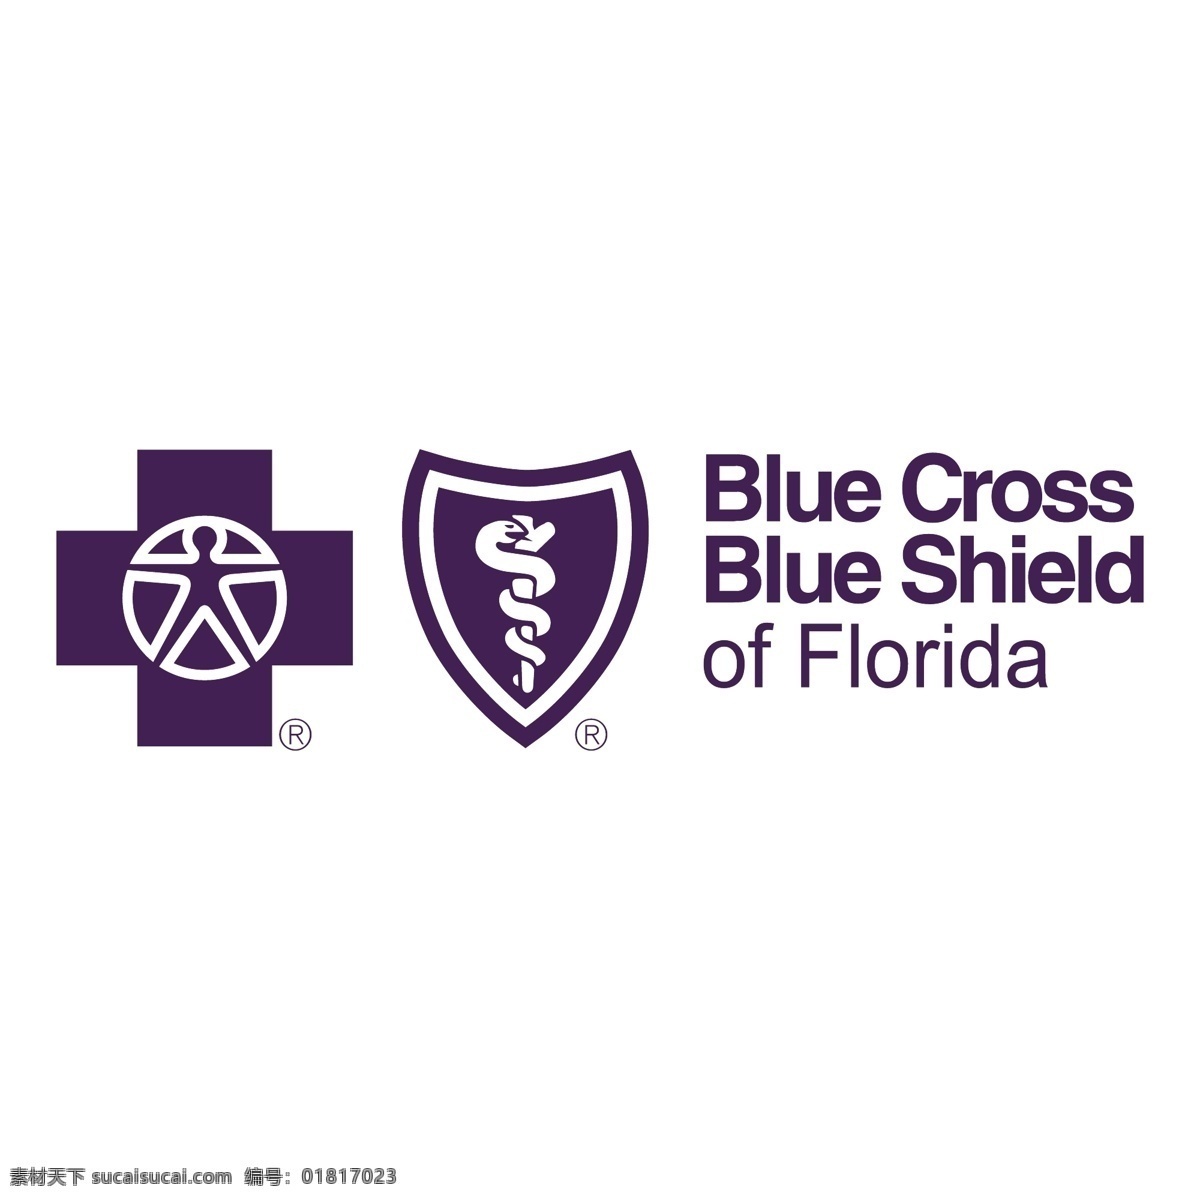 盾牌 蓝 蓝色 蓝十字 十字交叉 蓝色的盾牌 佛罗里达州 十字 蓝盾 标志 蓝十字蓝盾 矢量蓝十字蓝 矢量图 建筑家居